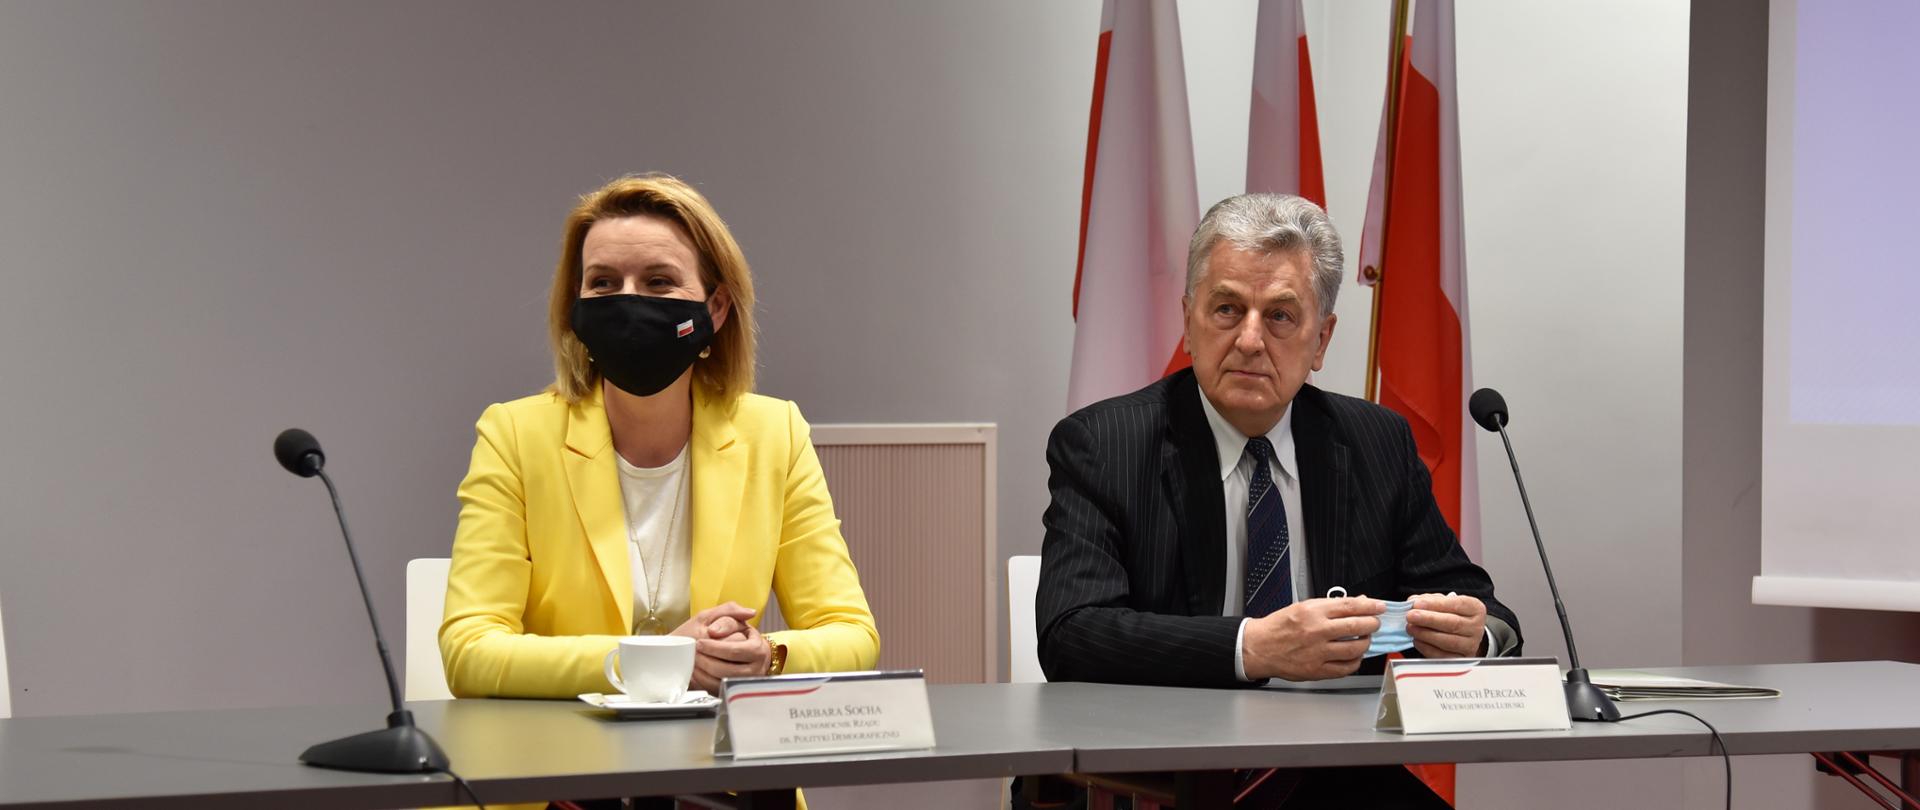 Wicewojewoda i minister Socha siedzą przy stole prezydialnym